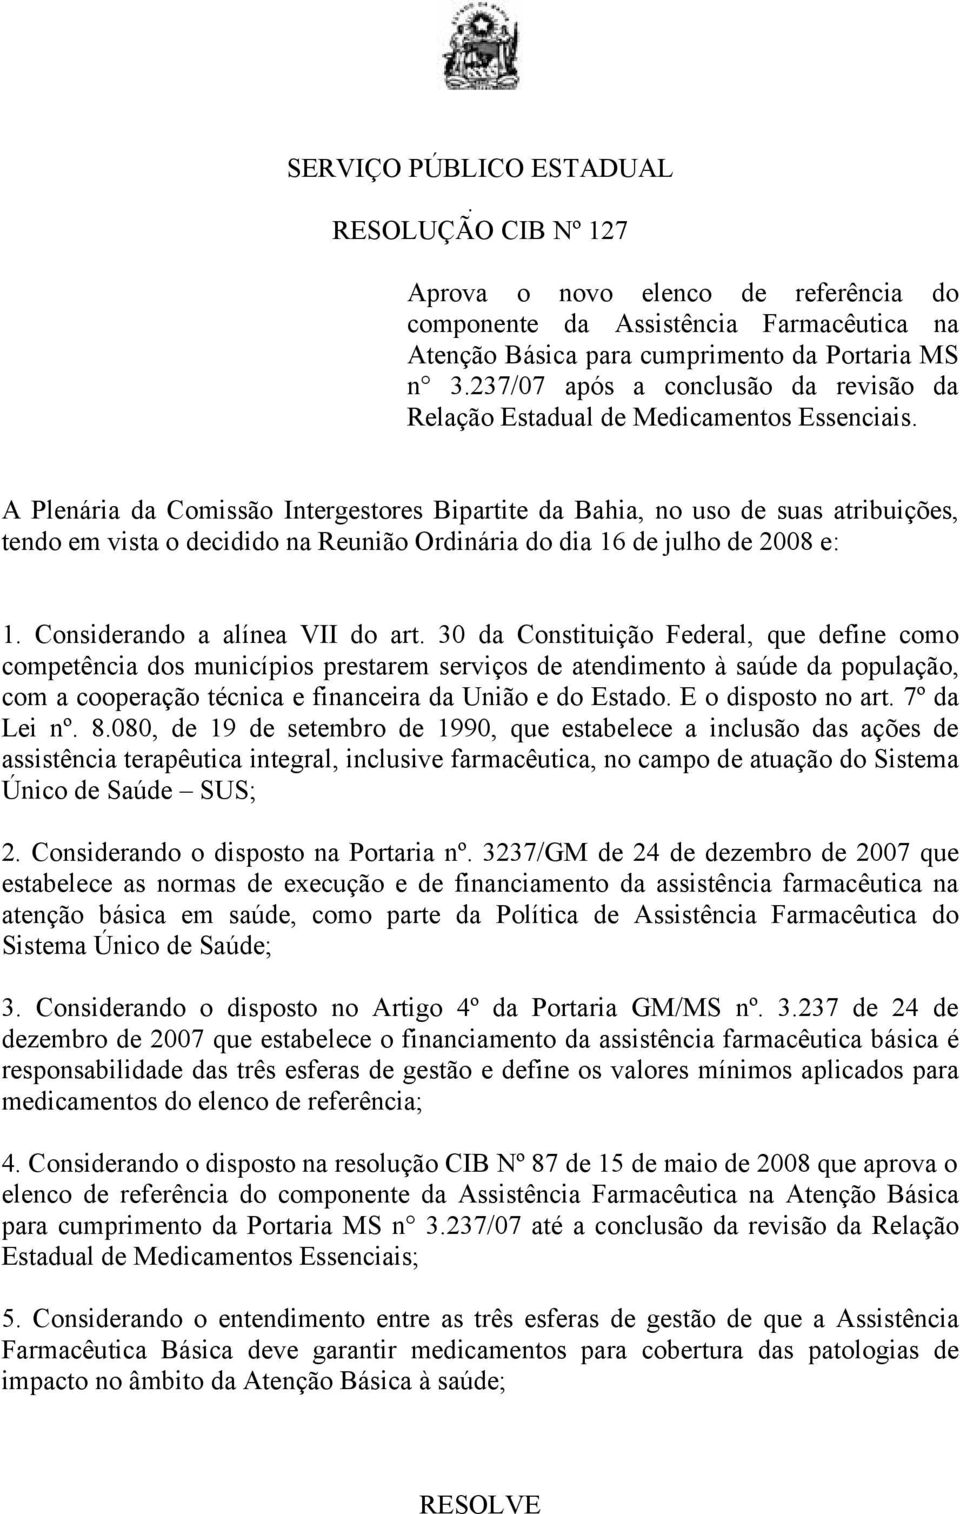 A Plenária da Comissão Intergestores Bipartite da Bahia, no uso de suas atribuições, tendo em vista o decidido na Reunião Ordinária do dia 16 de julho de 2008 e: 1. Considerando a alínea VII do art.